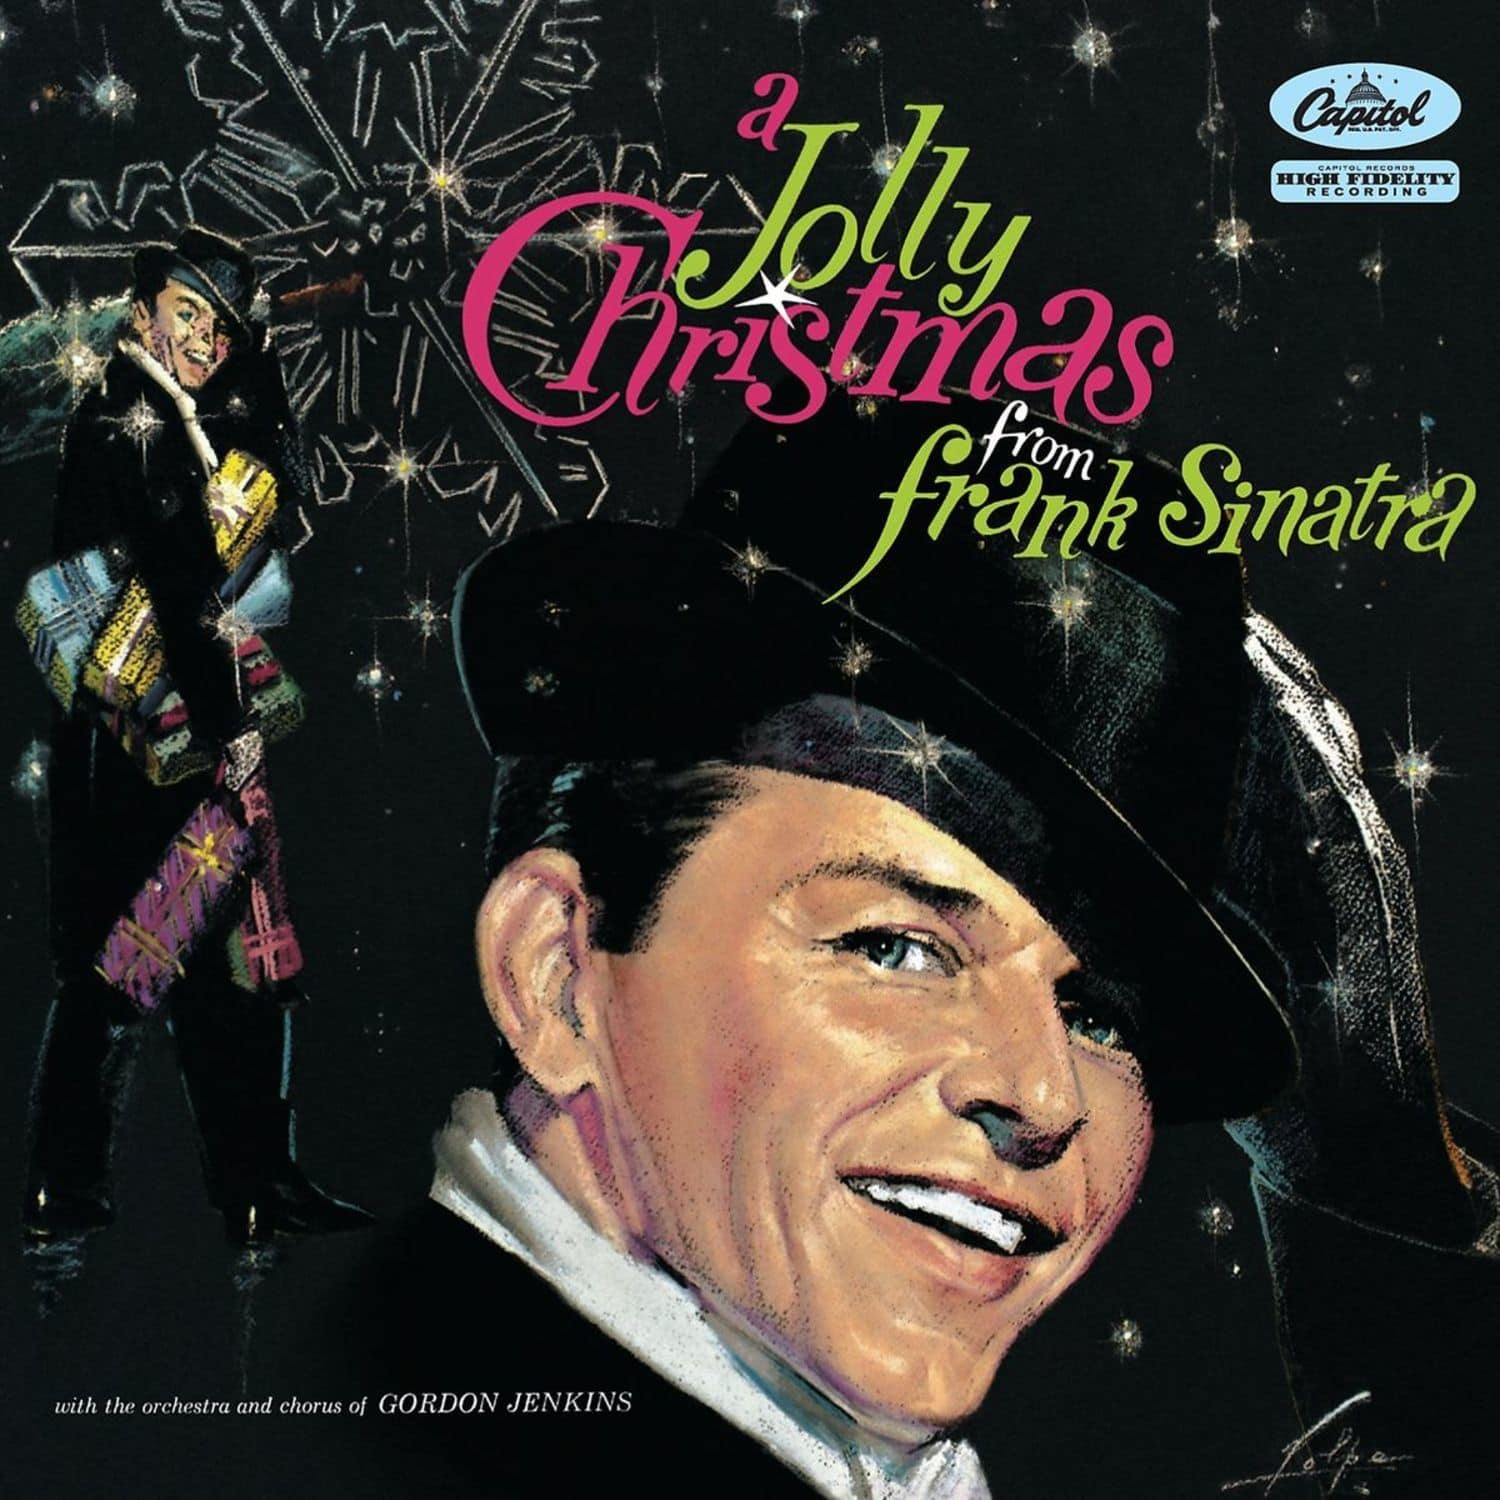 Frank Sinatra - A JOLLY CHRISTMAS FROM FRANK SINATRA 